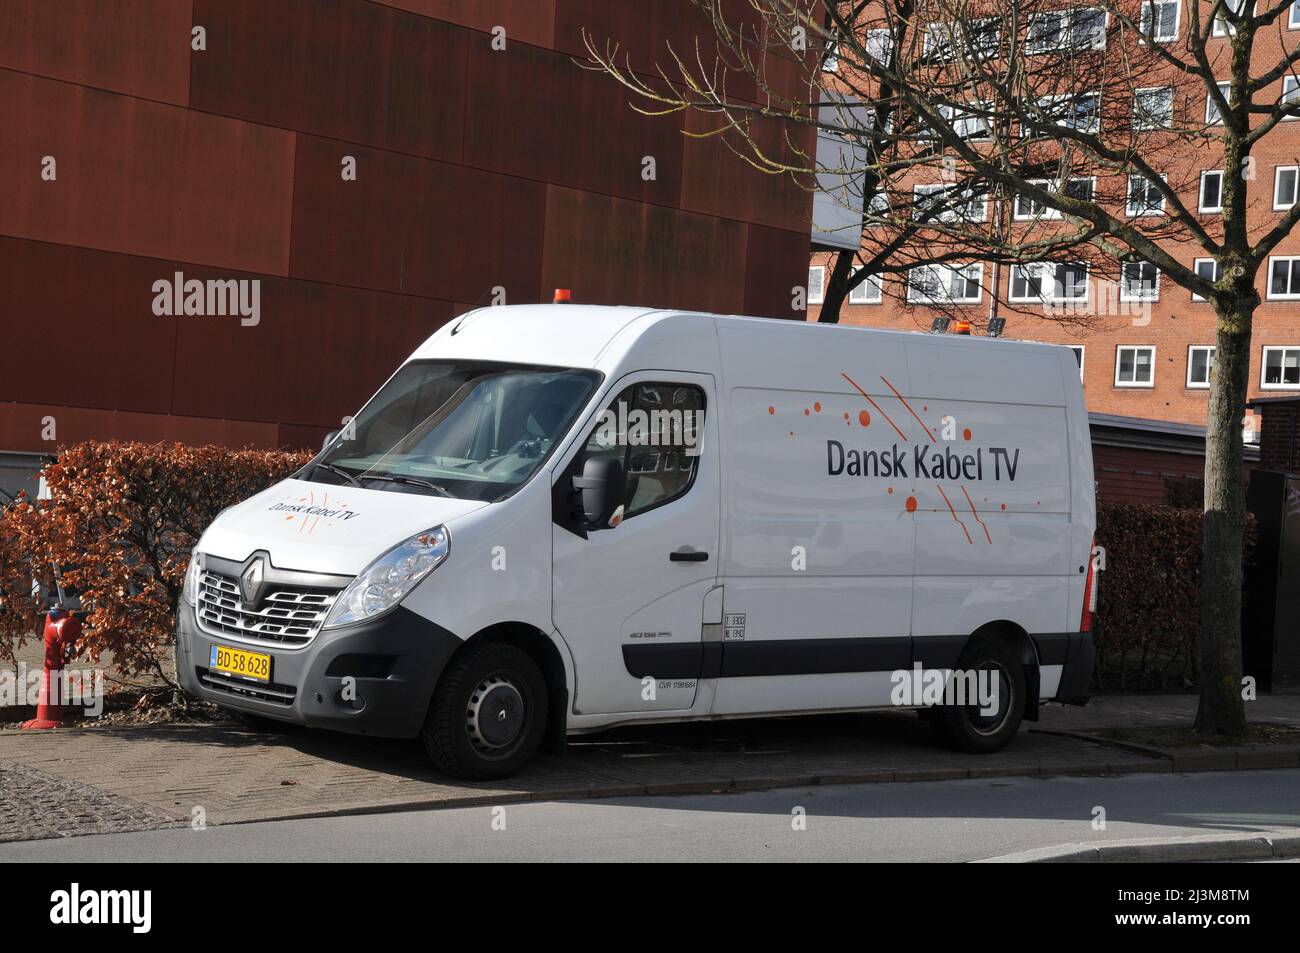 Danske kabel tv hi-res stock photography and images - Alamy